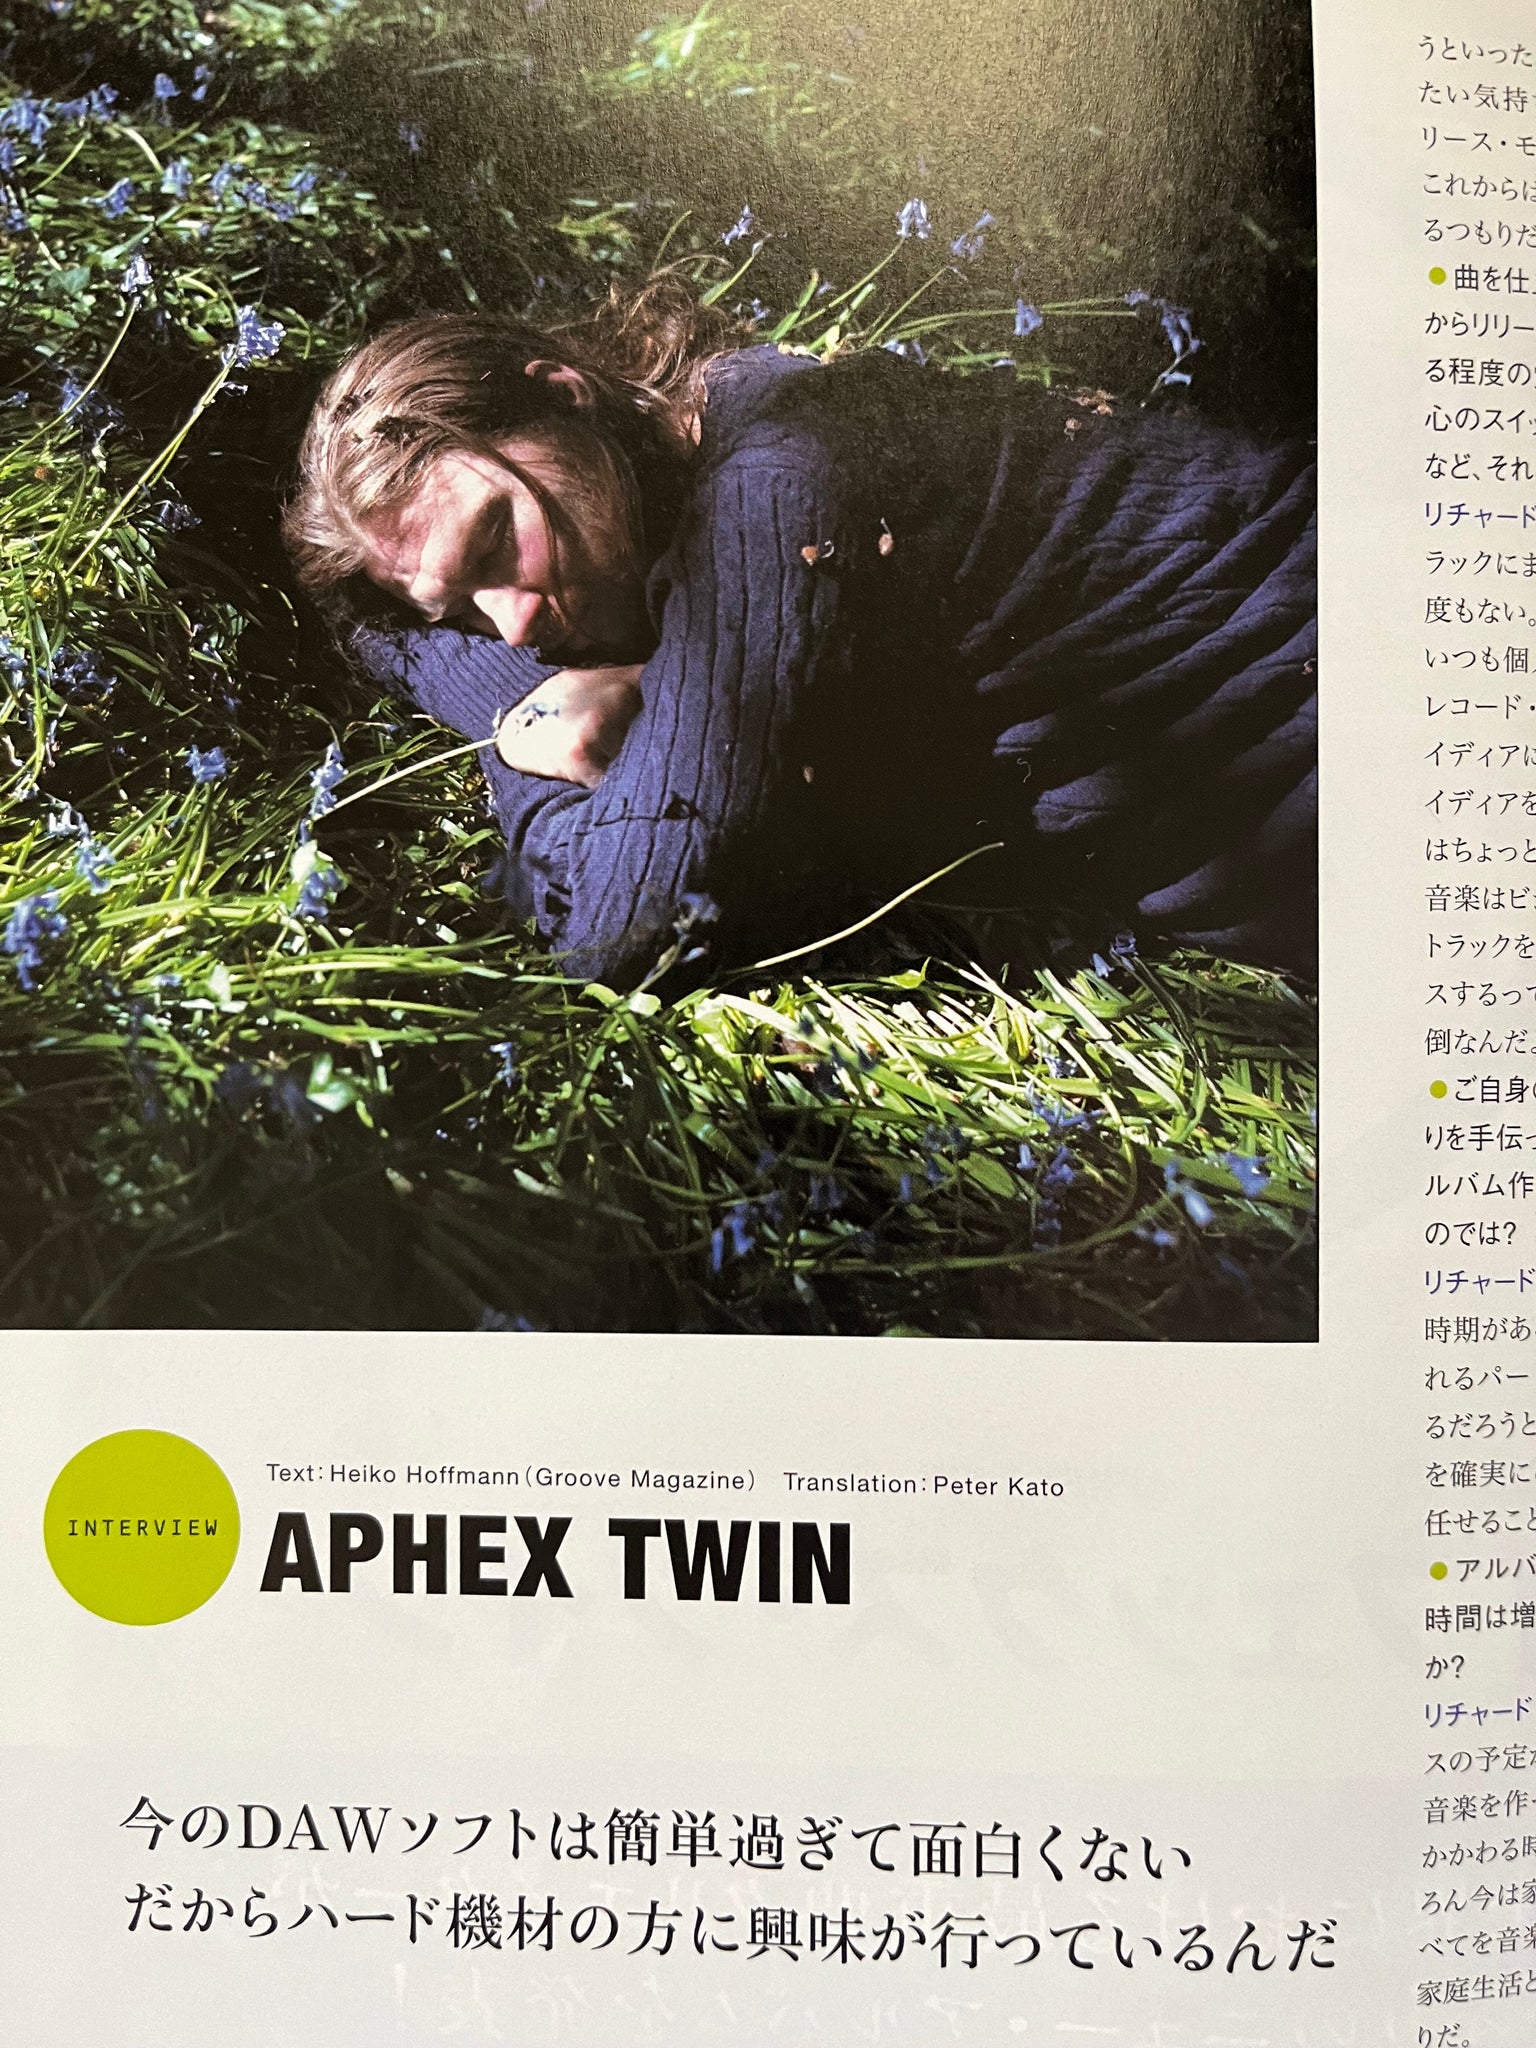 Sound & Recording Aphex Twin